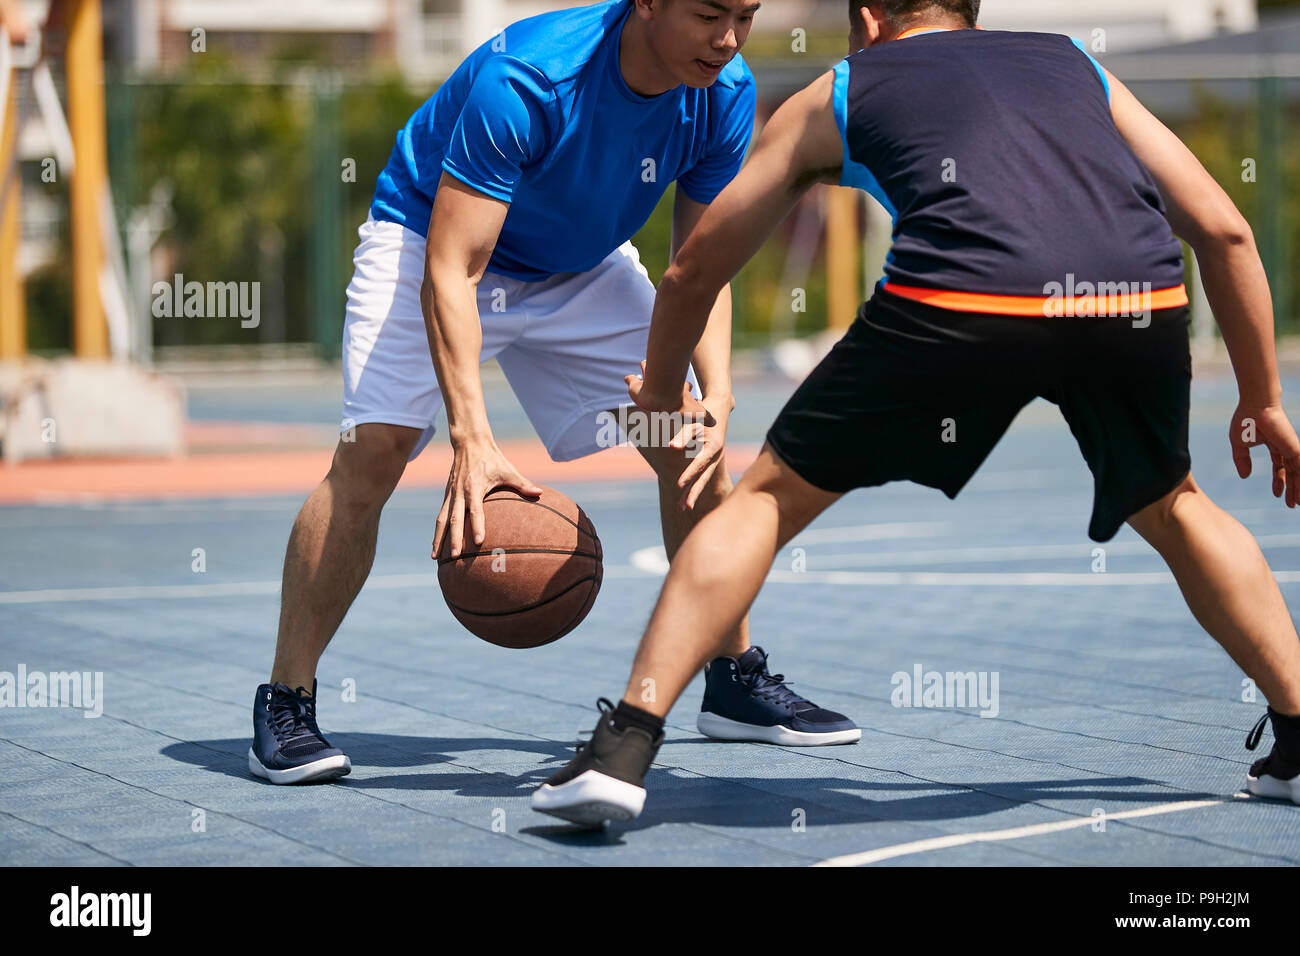 Jungen asiatischen Erwachsener Spieler Basketball spielen im Freien Gericht. Stockfoto